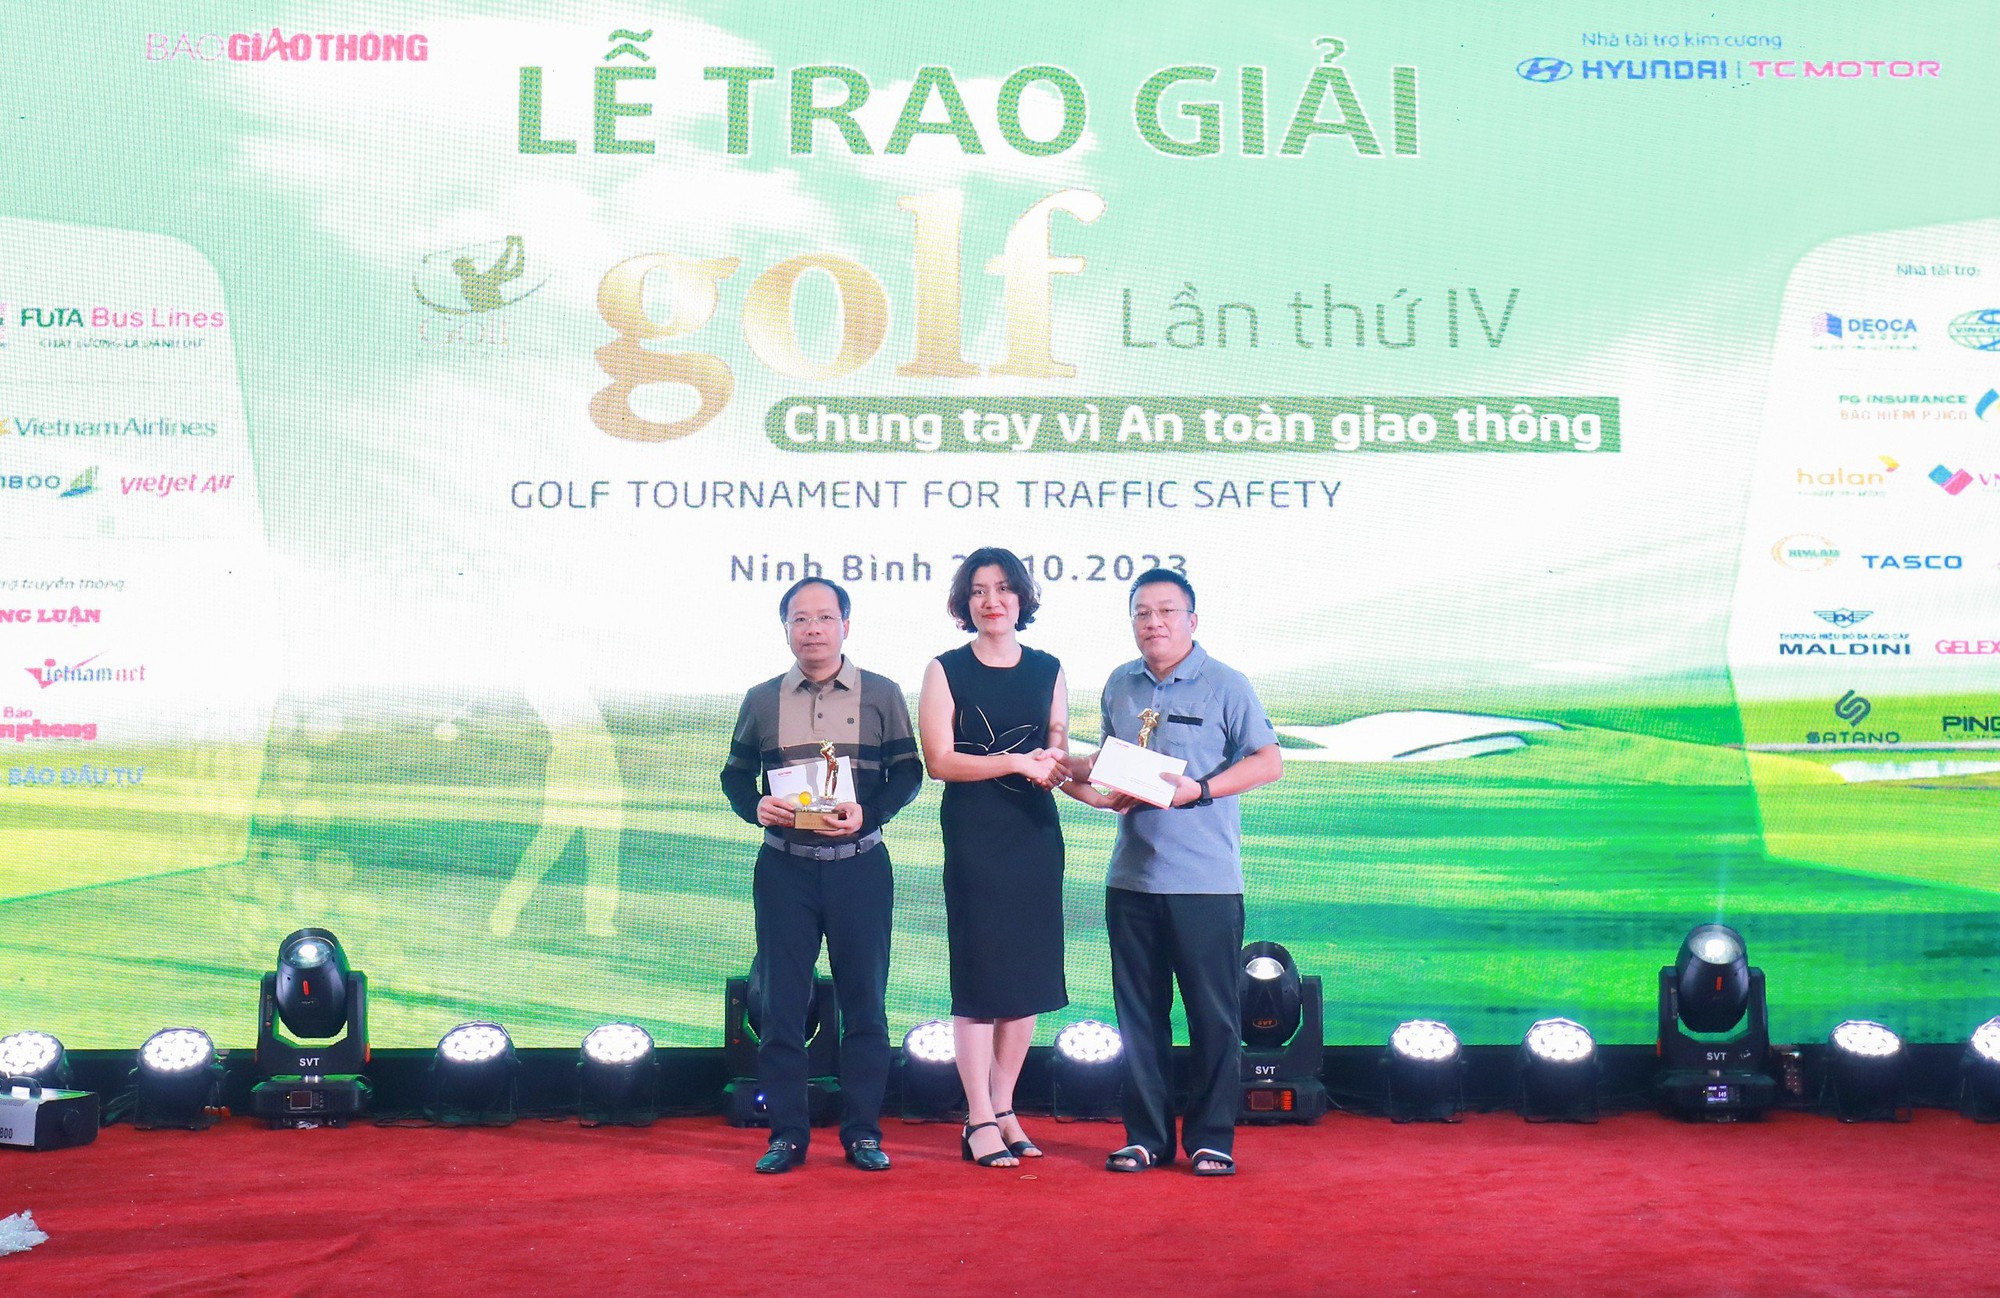 Golfer Nguyễn Hồng Hải vô địch Giải Golf chung tay vì ATGT 2023 - Ảnh 6.